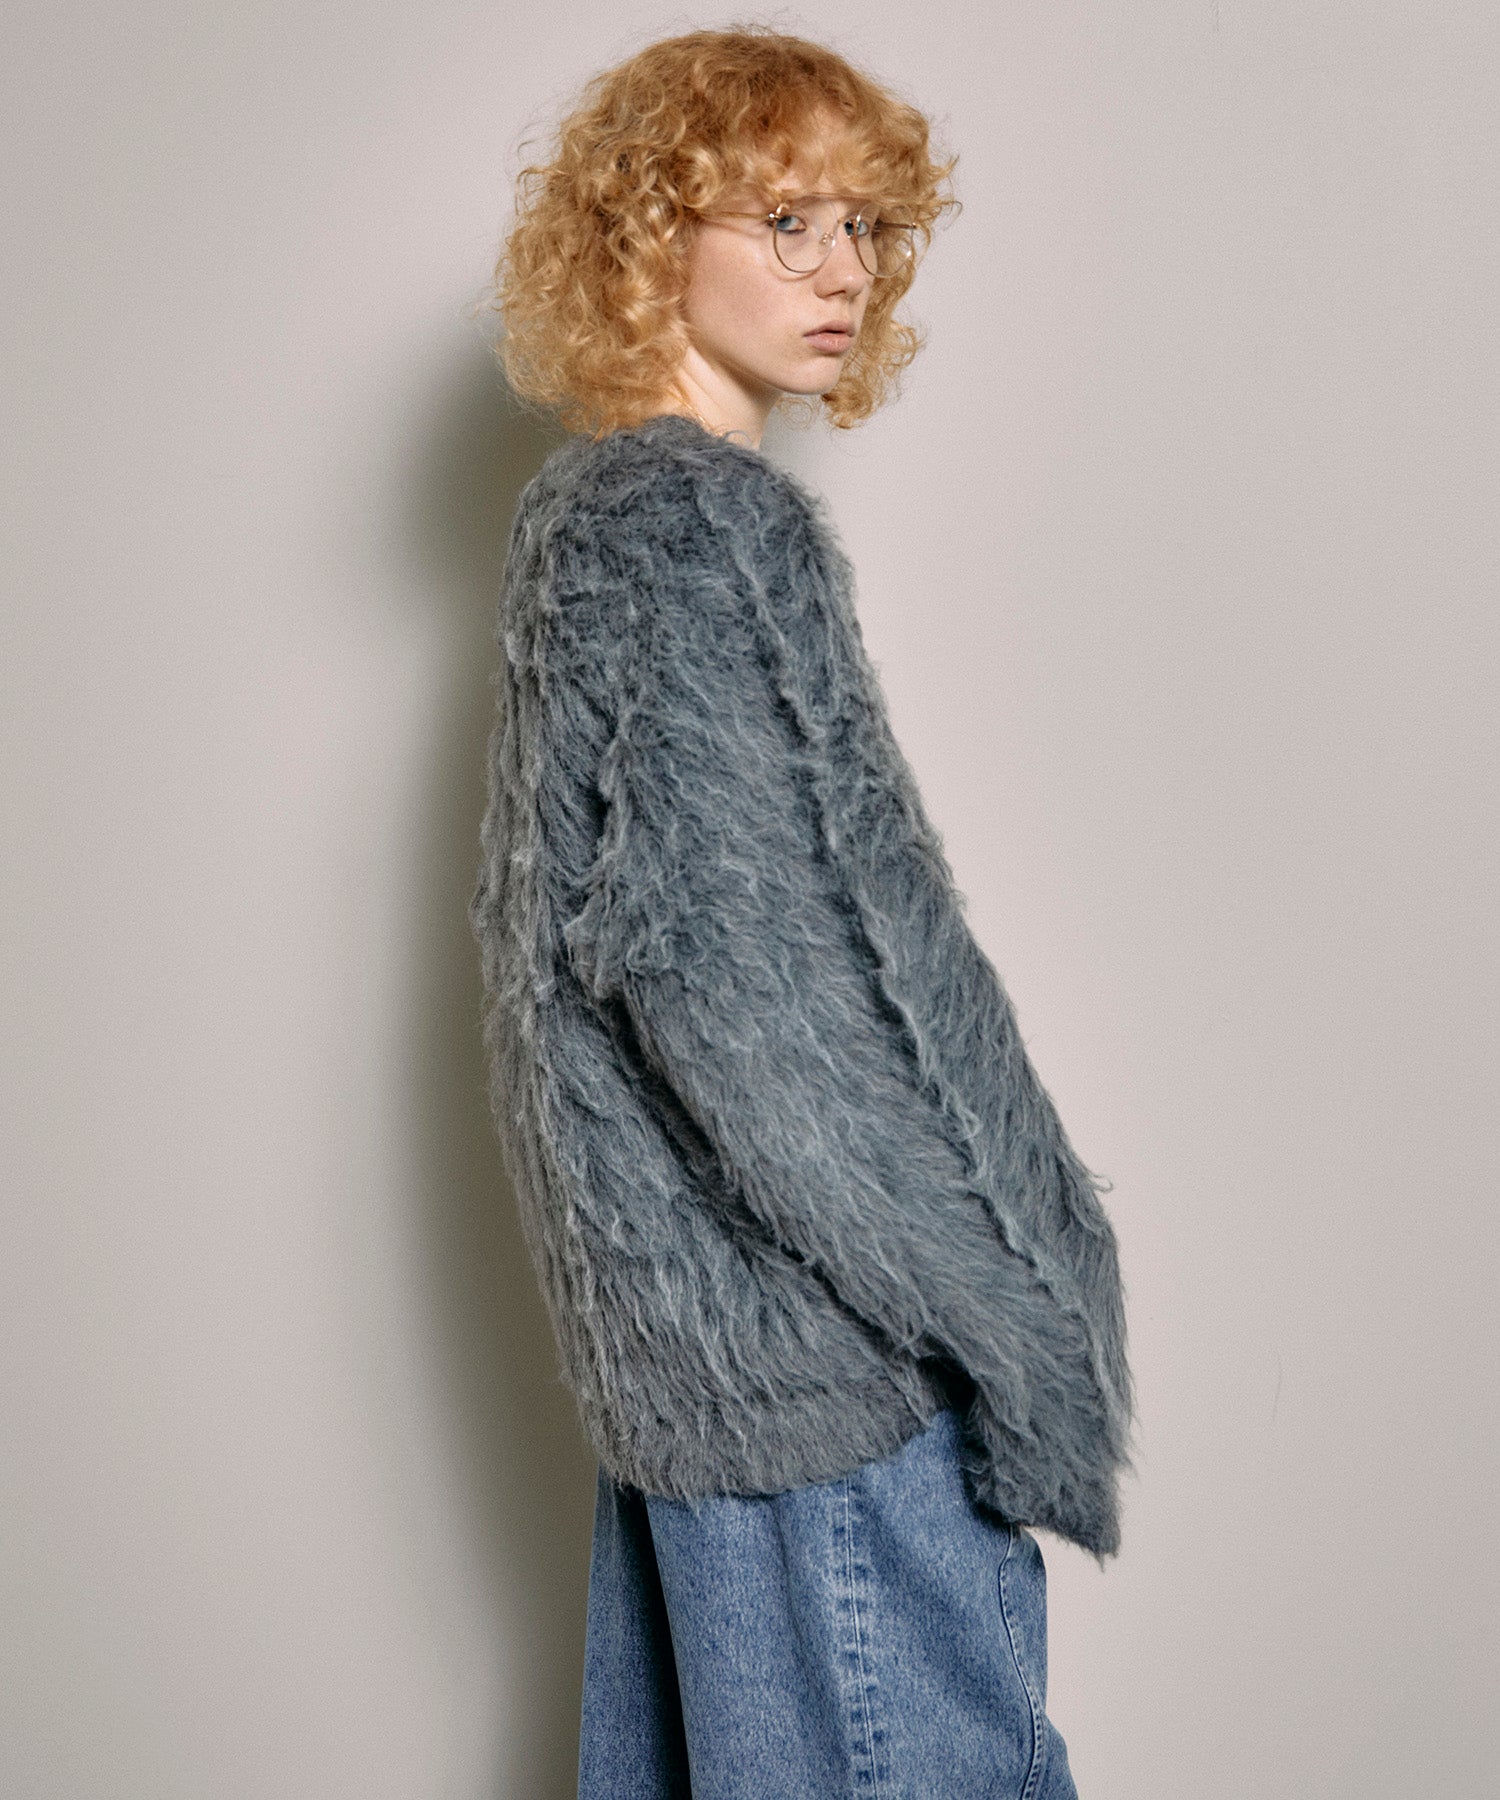 ニット/セーター専用 80s vintage shaggy fur vitamin knit